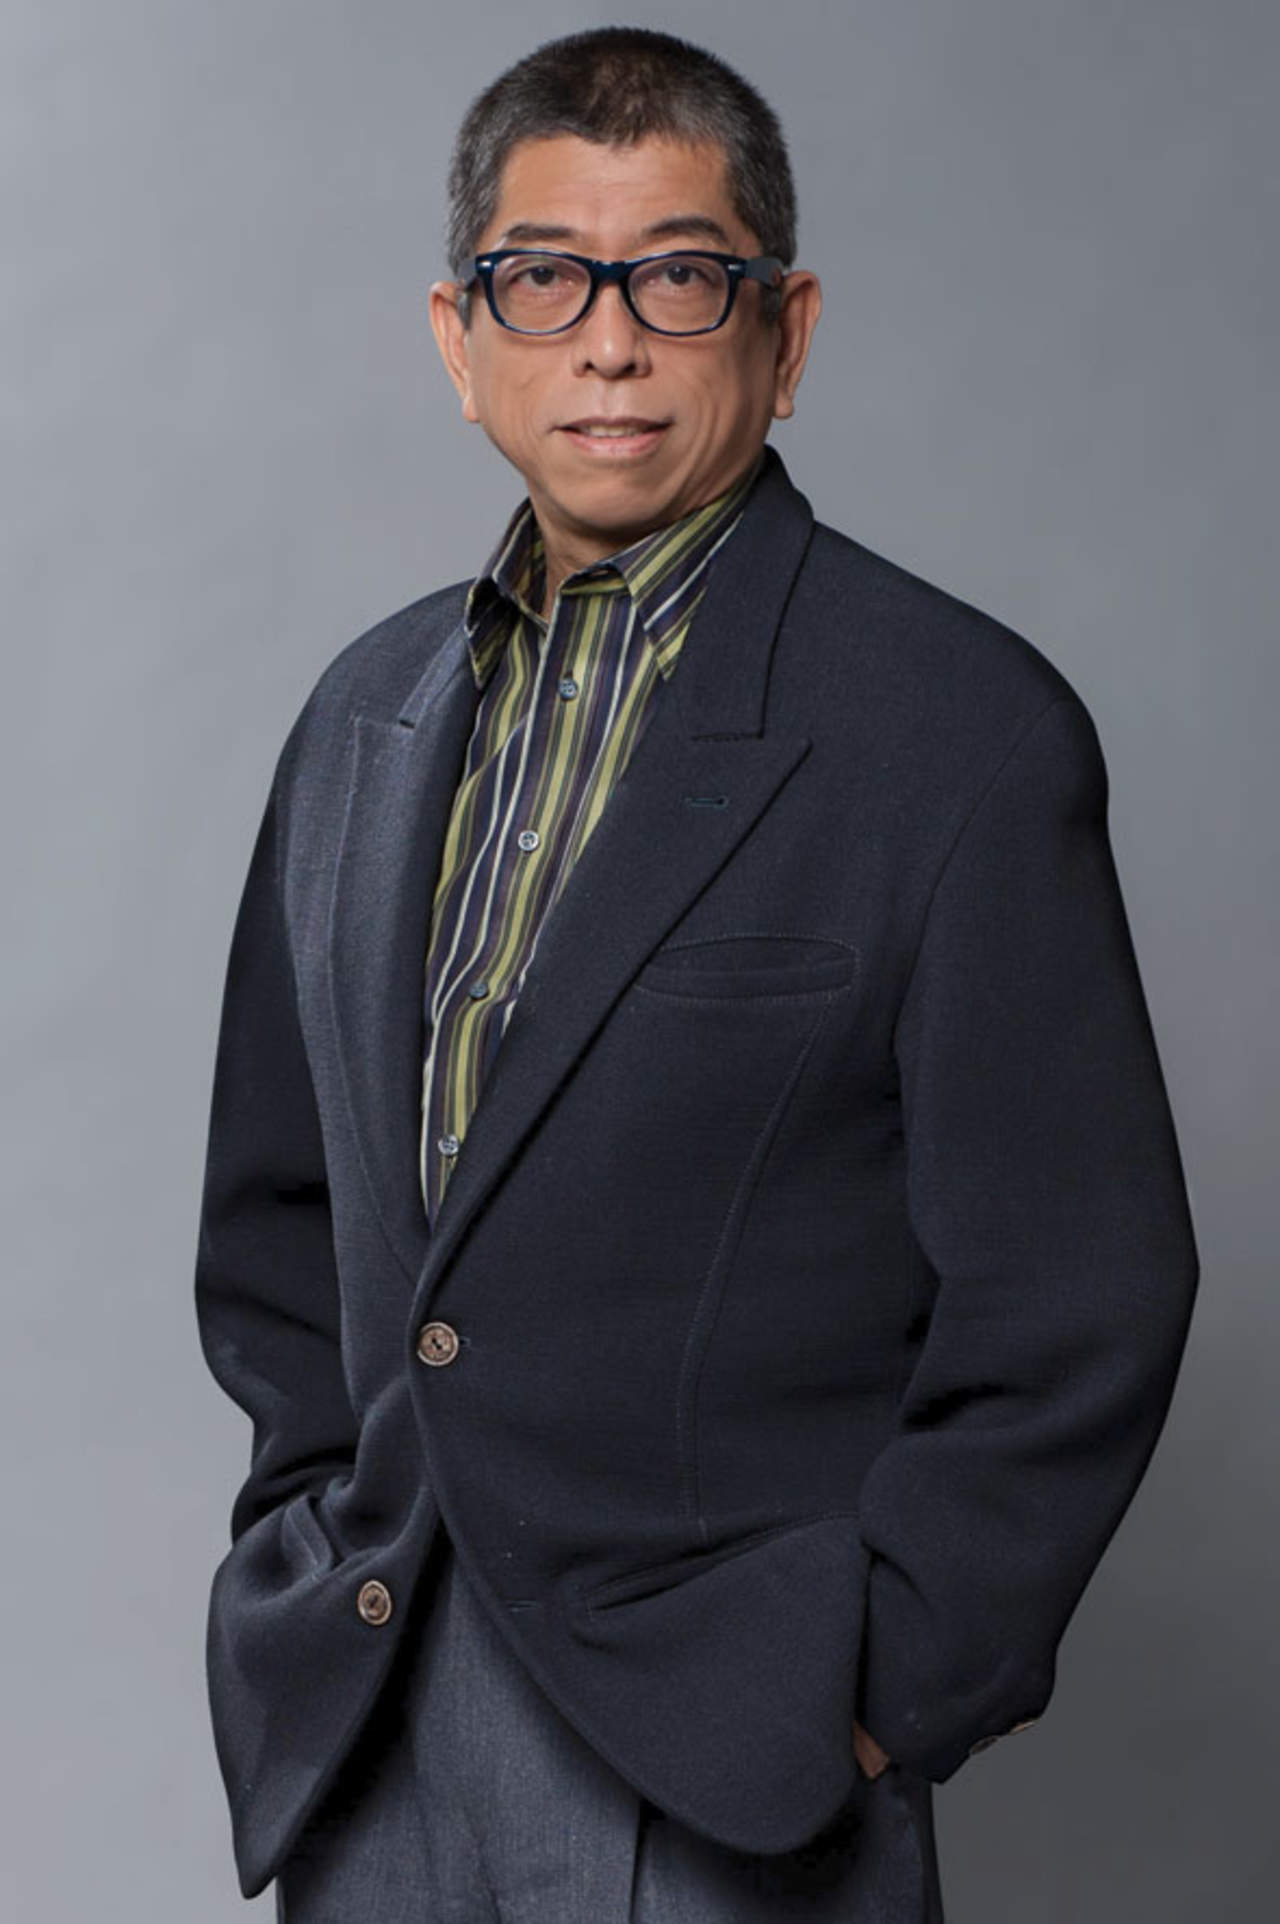 El diseñador japonés Tadashi
Soji.